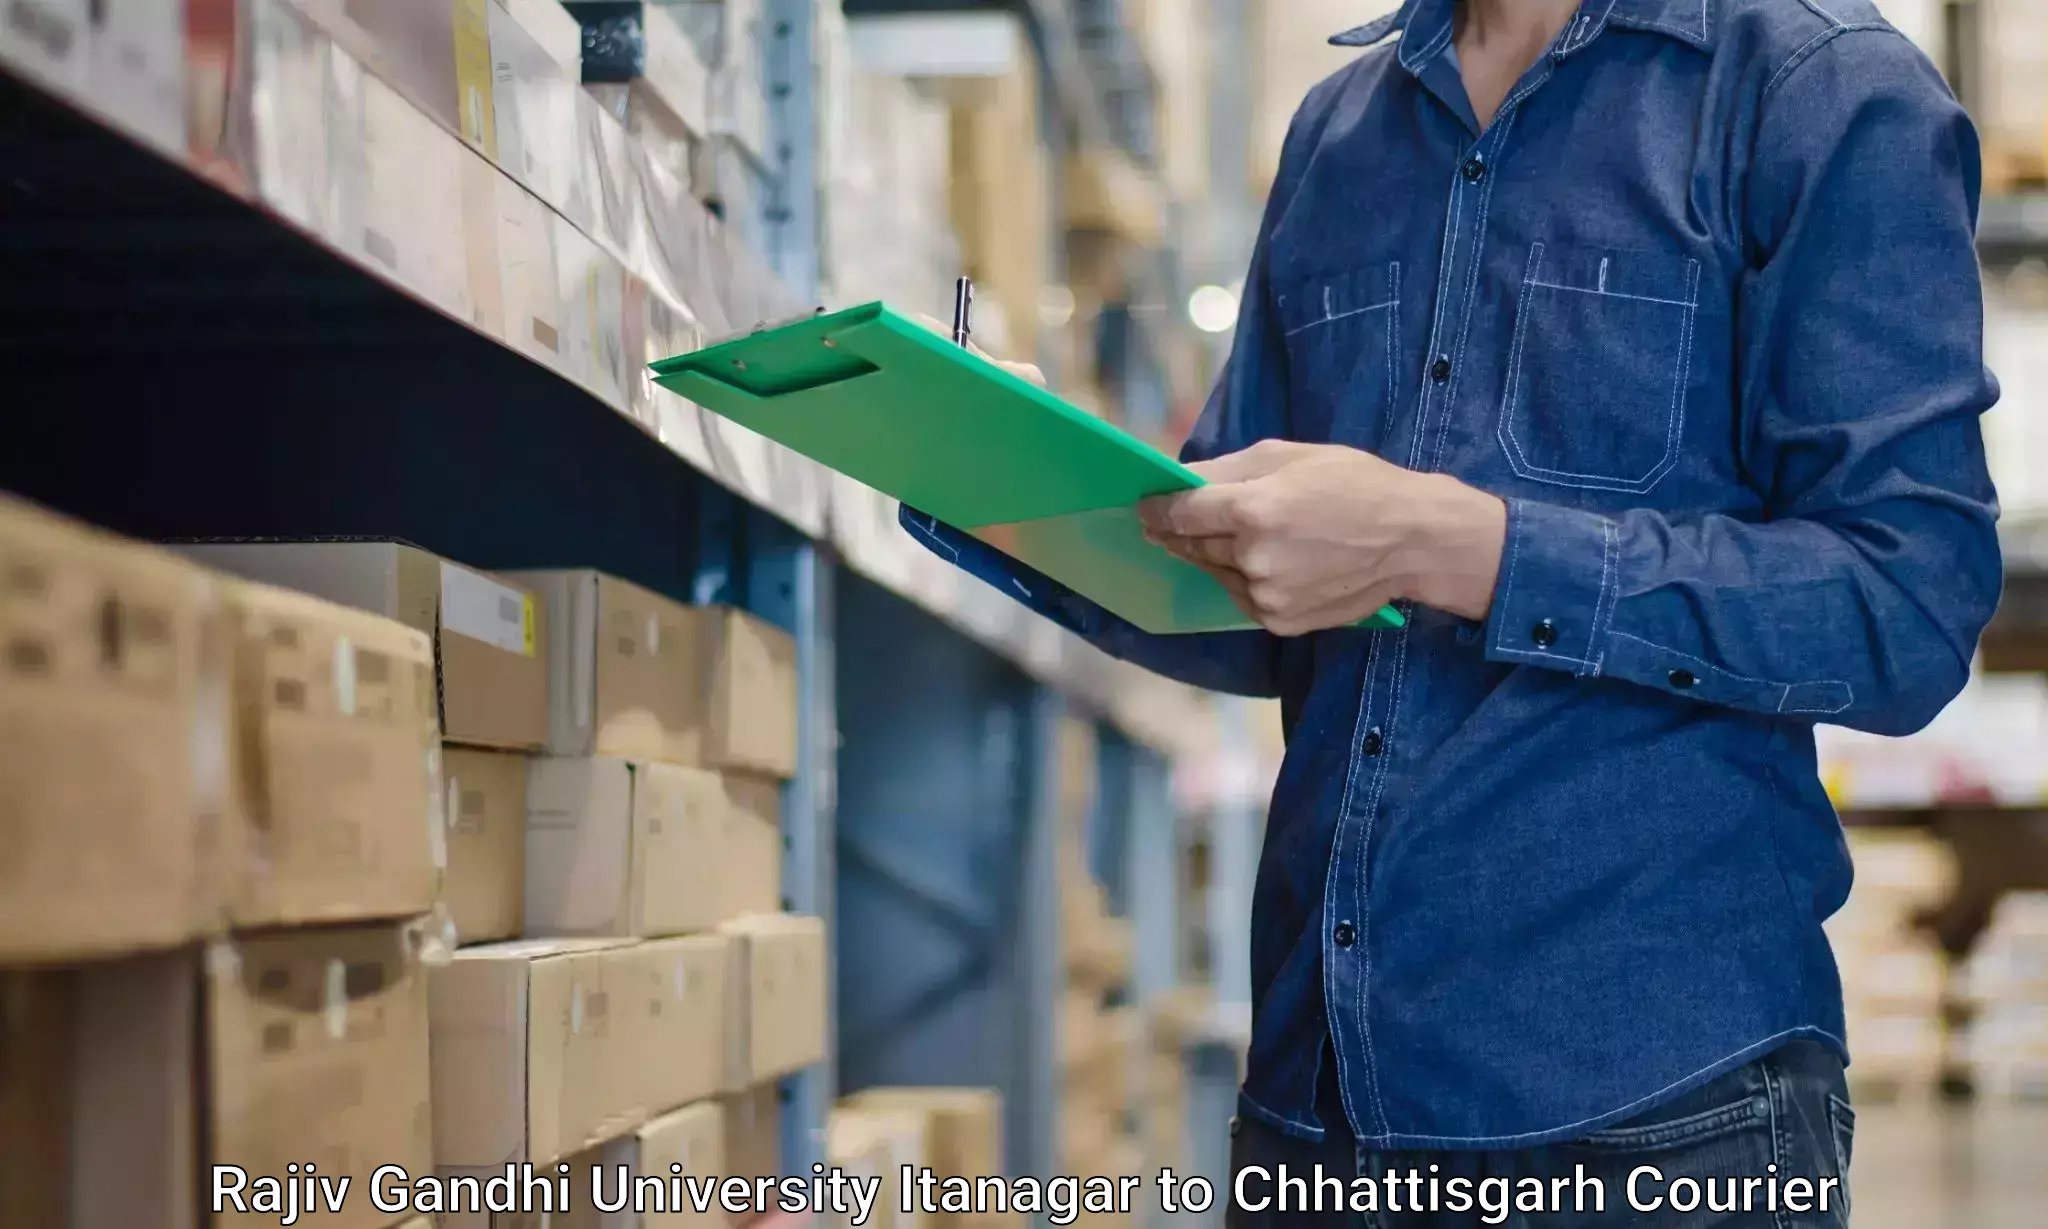 Trusted moving company Rajiv Gandhi University Itanagar to Chhattisgarh